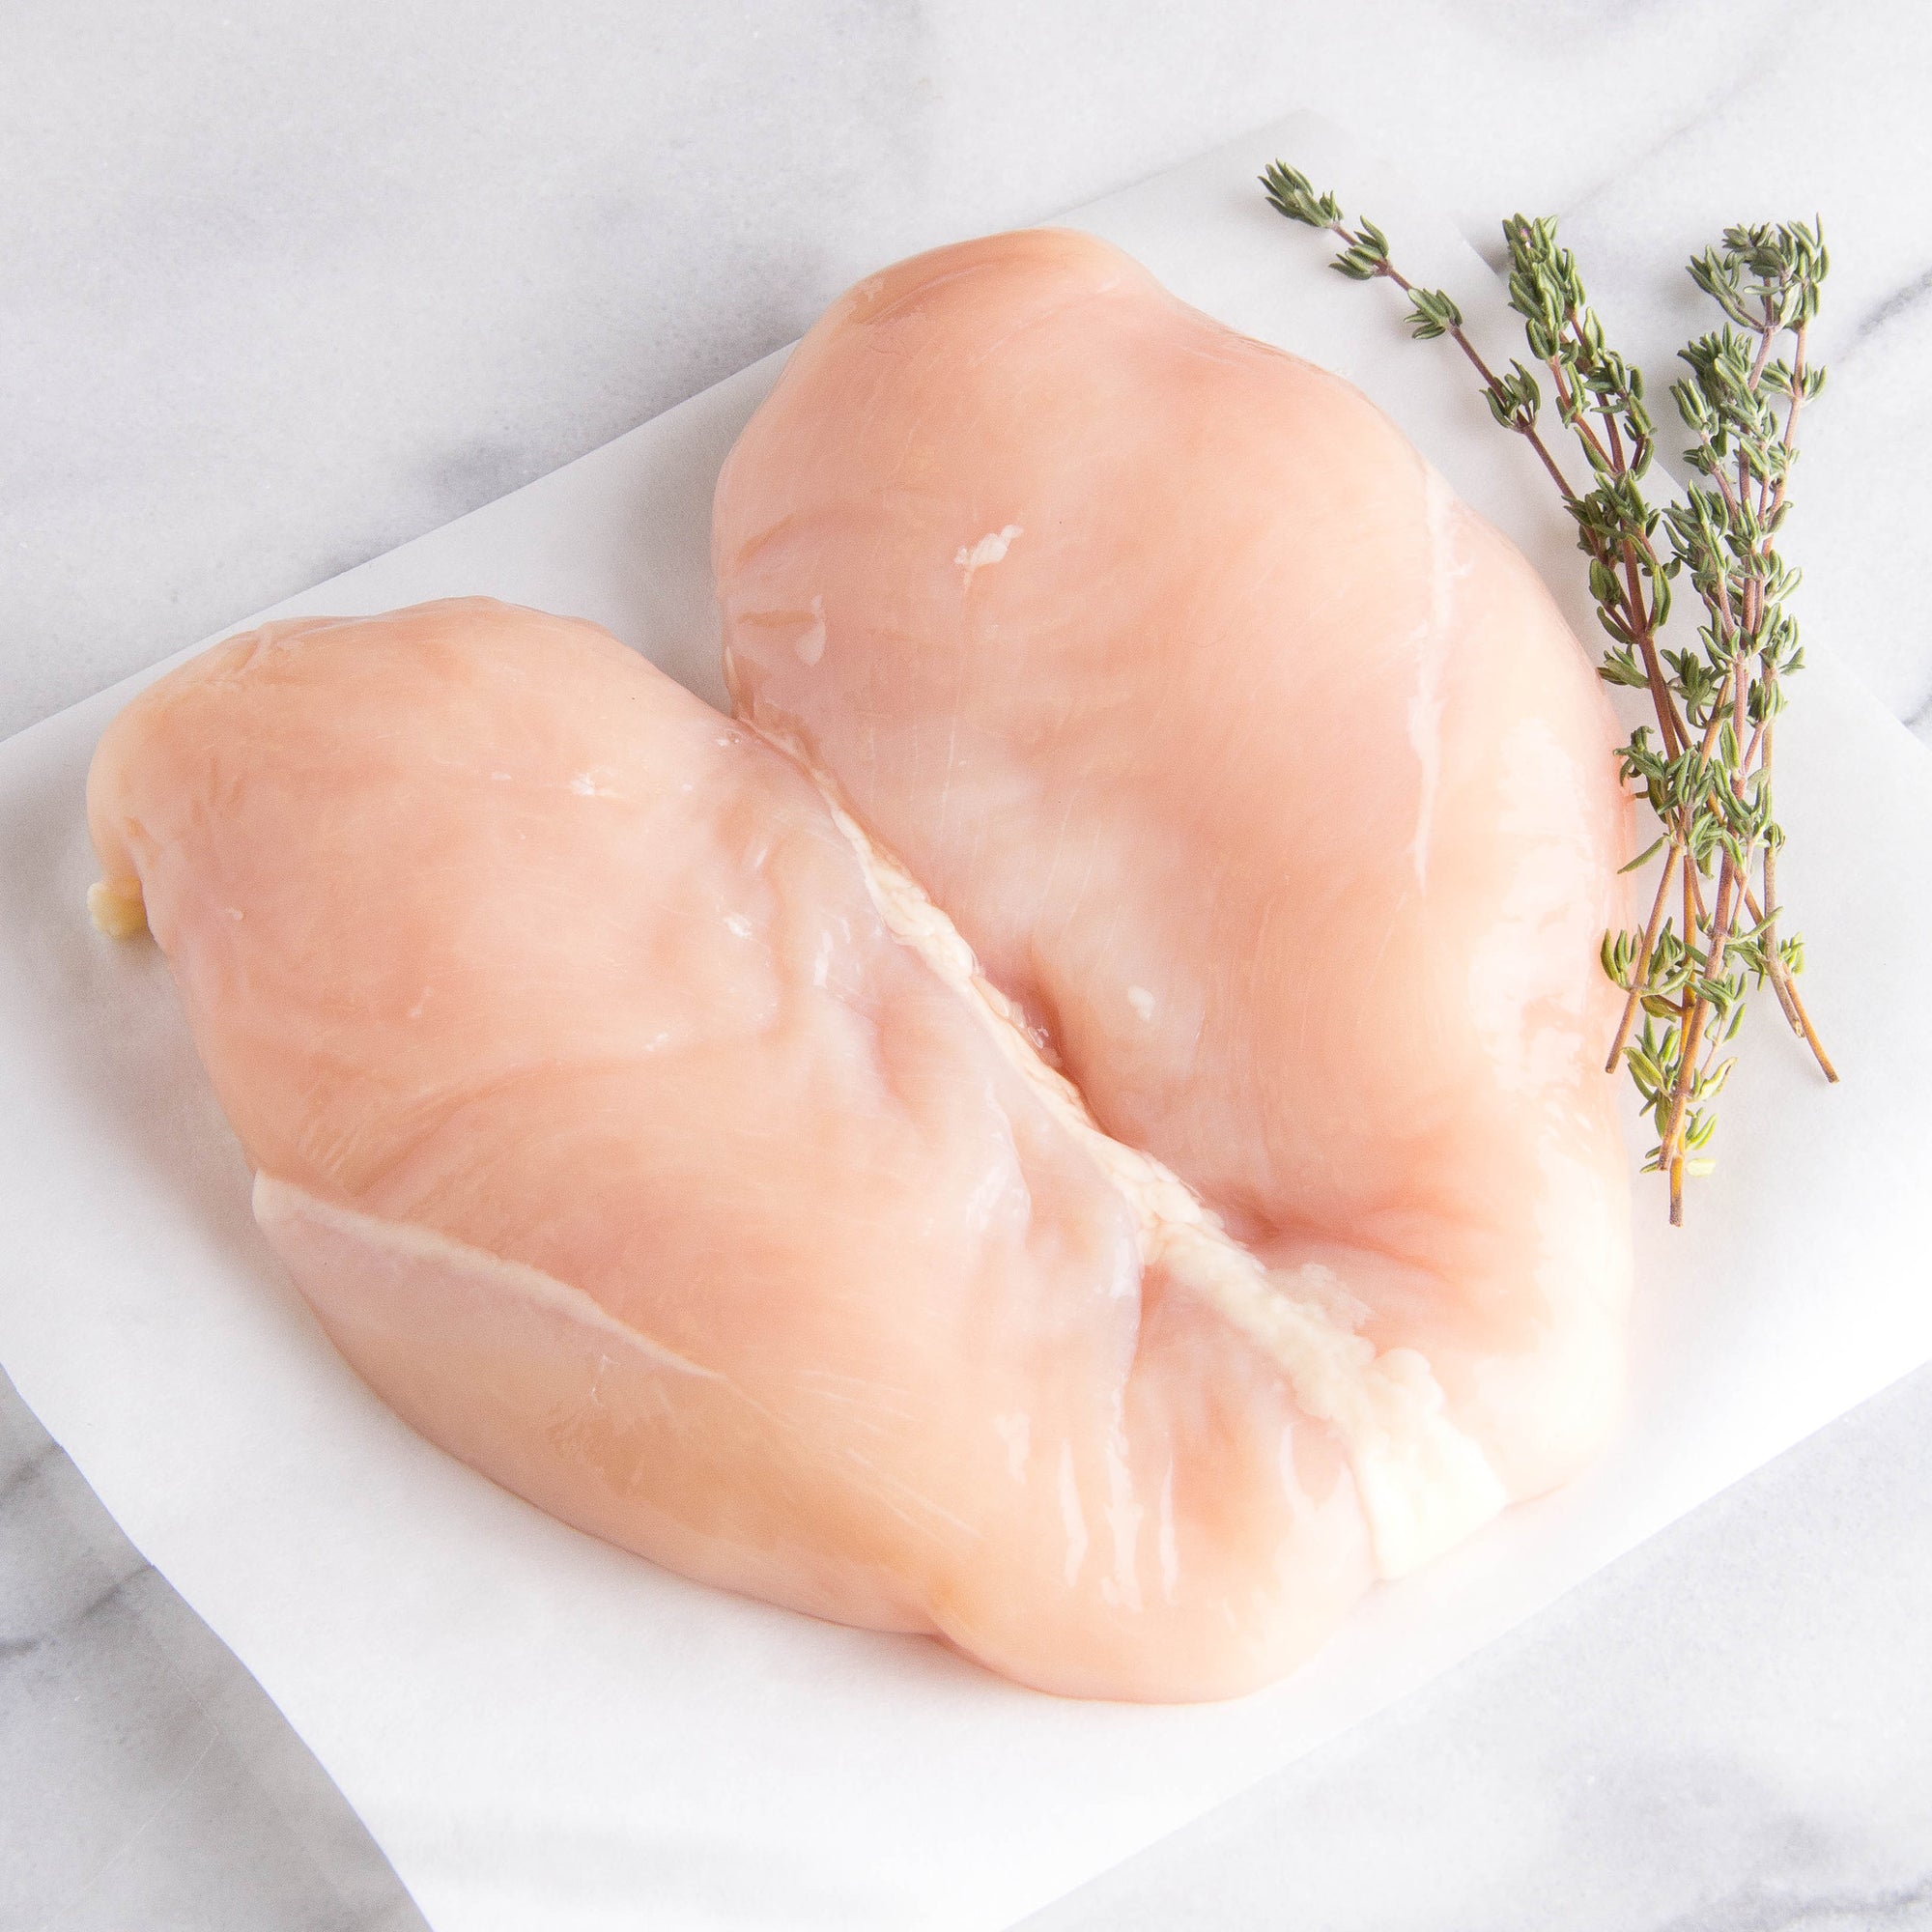 Boneless Skinless Chicken Breasts - Joyce Farms